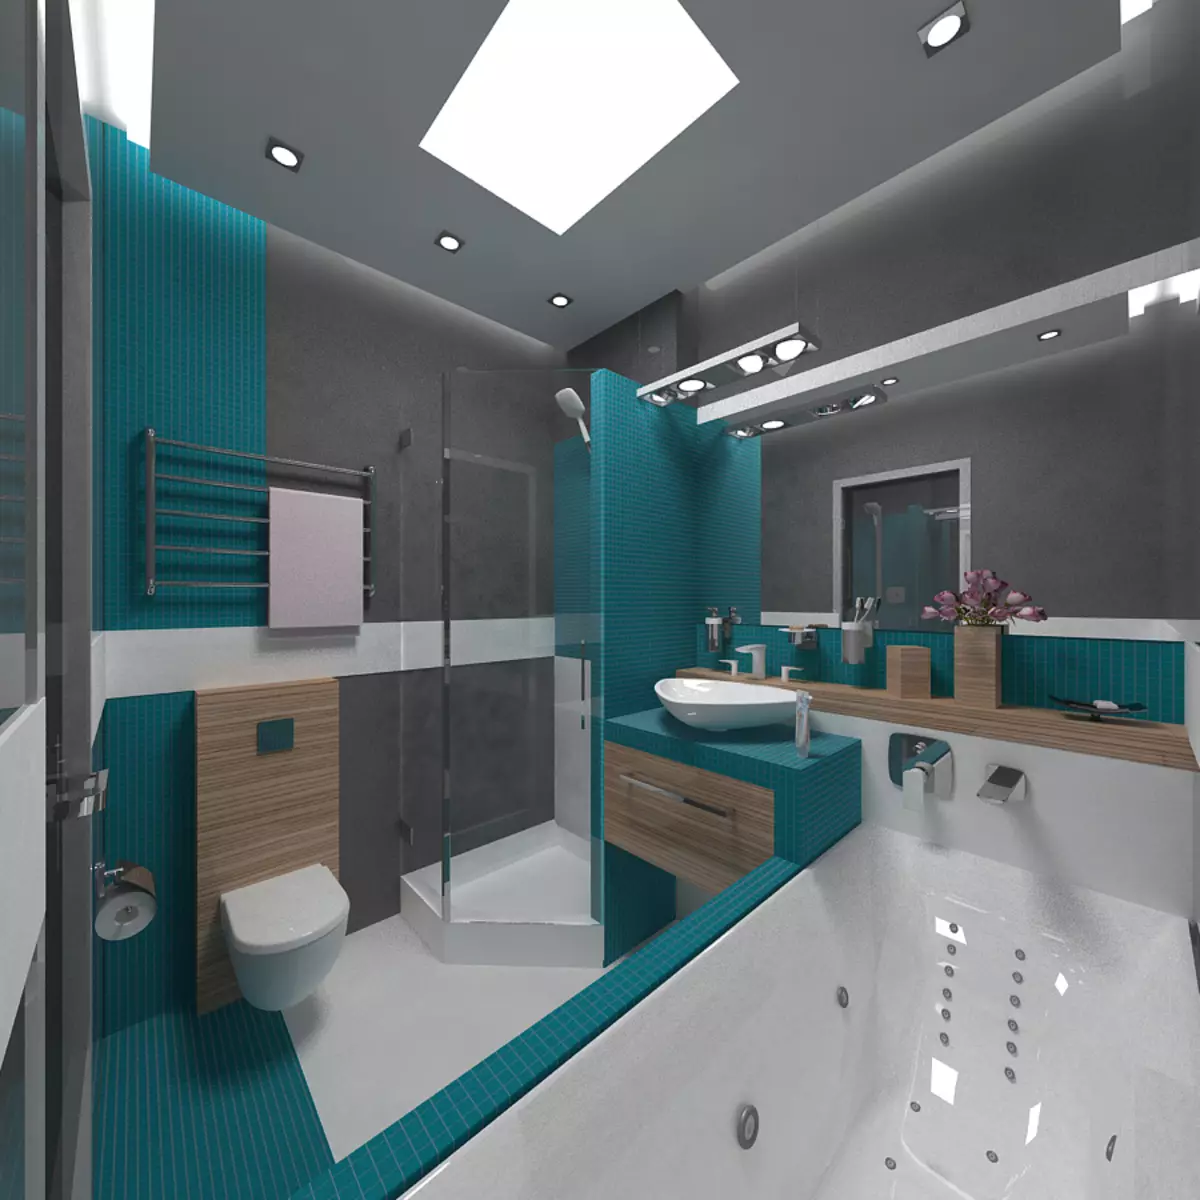 تصميم مجتمعة الحمام 6 متر مربع. M (77 صور): التصميم الداخلي مع مرحاض، حمام تخطيط 2 من 3 أمتار 10454_52